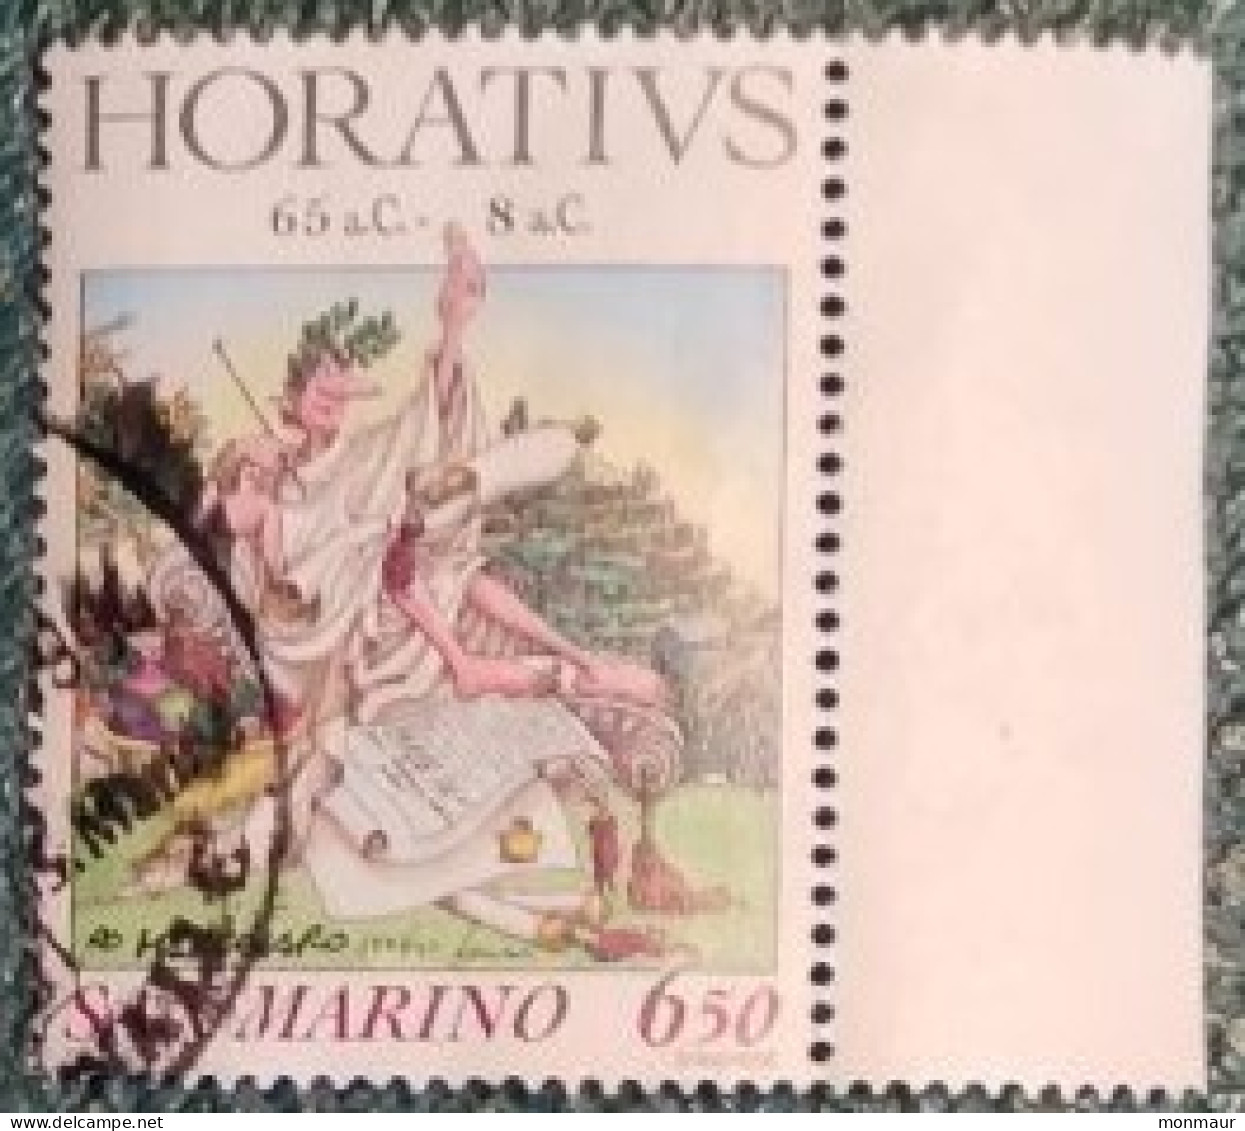 SAN MARINO 1993 CELEBRAZIONI D'AUTORE ORAZIO - Used Stamps